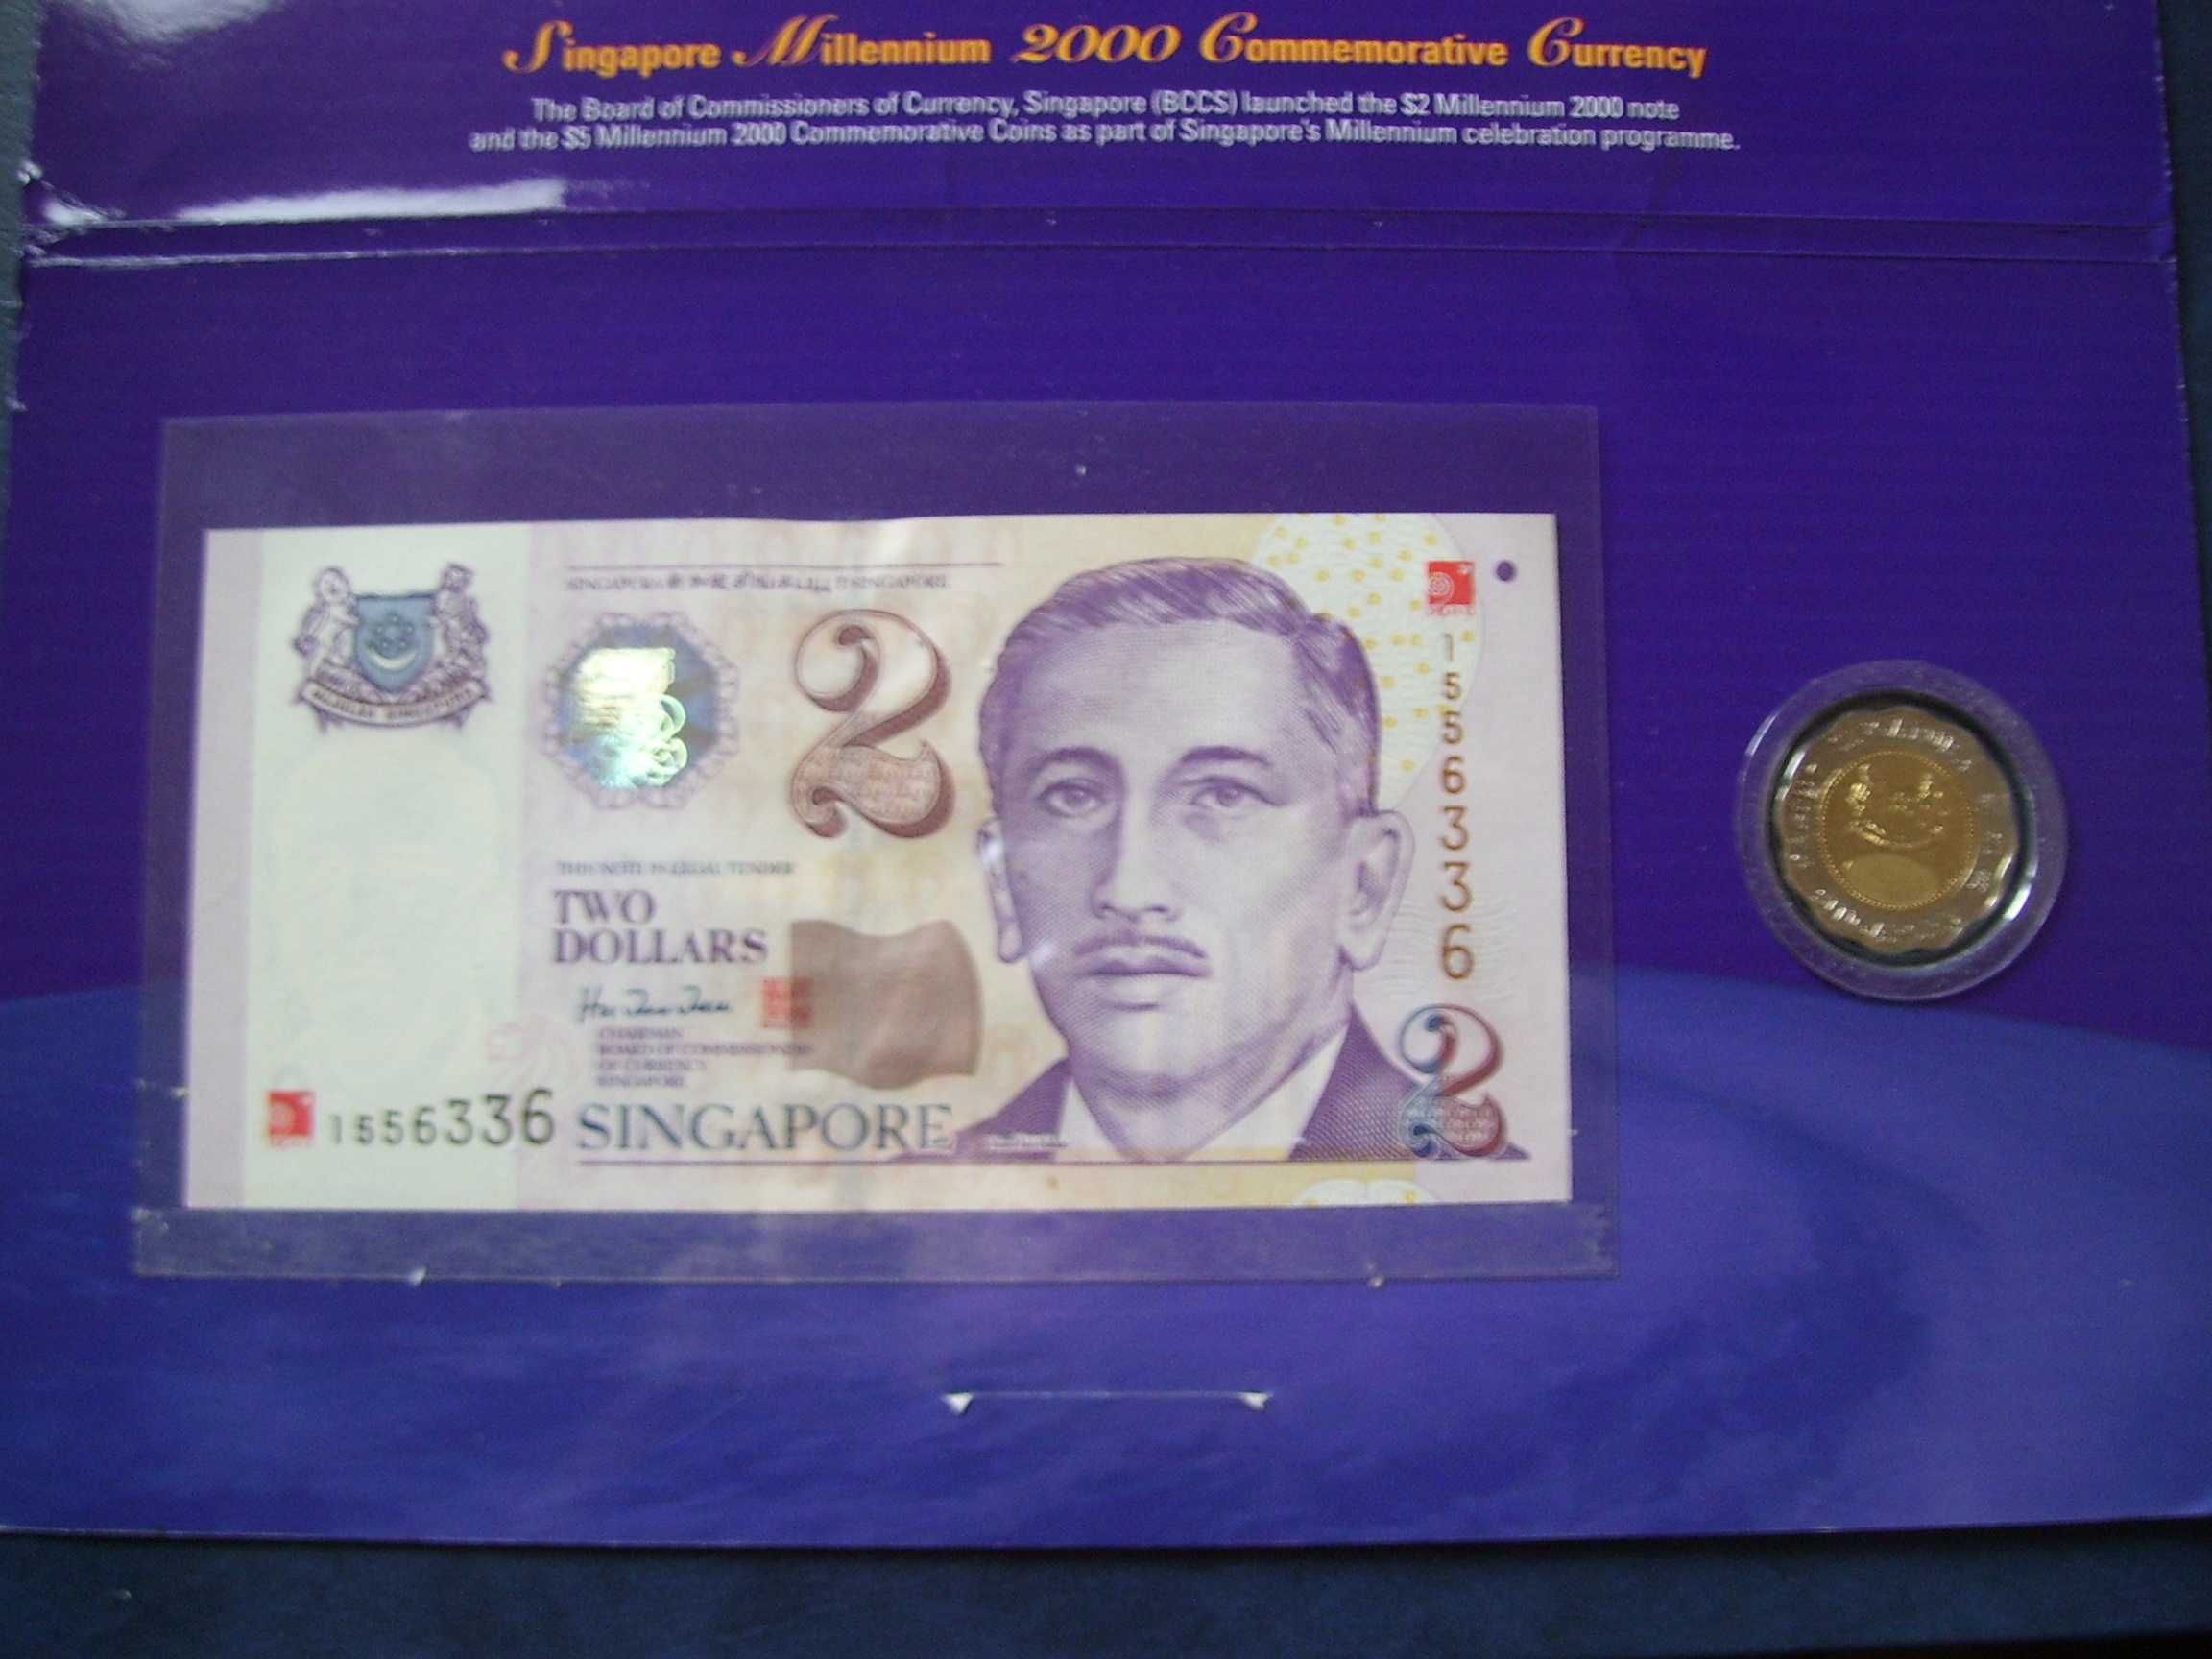 Stare monety Książka Set 2000 Singapur 5 dolar i 2 dolar stan menniczy